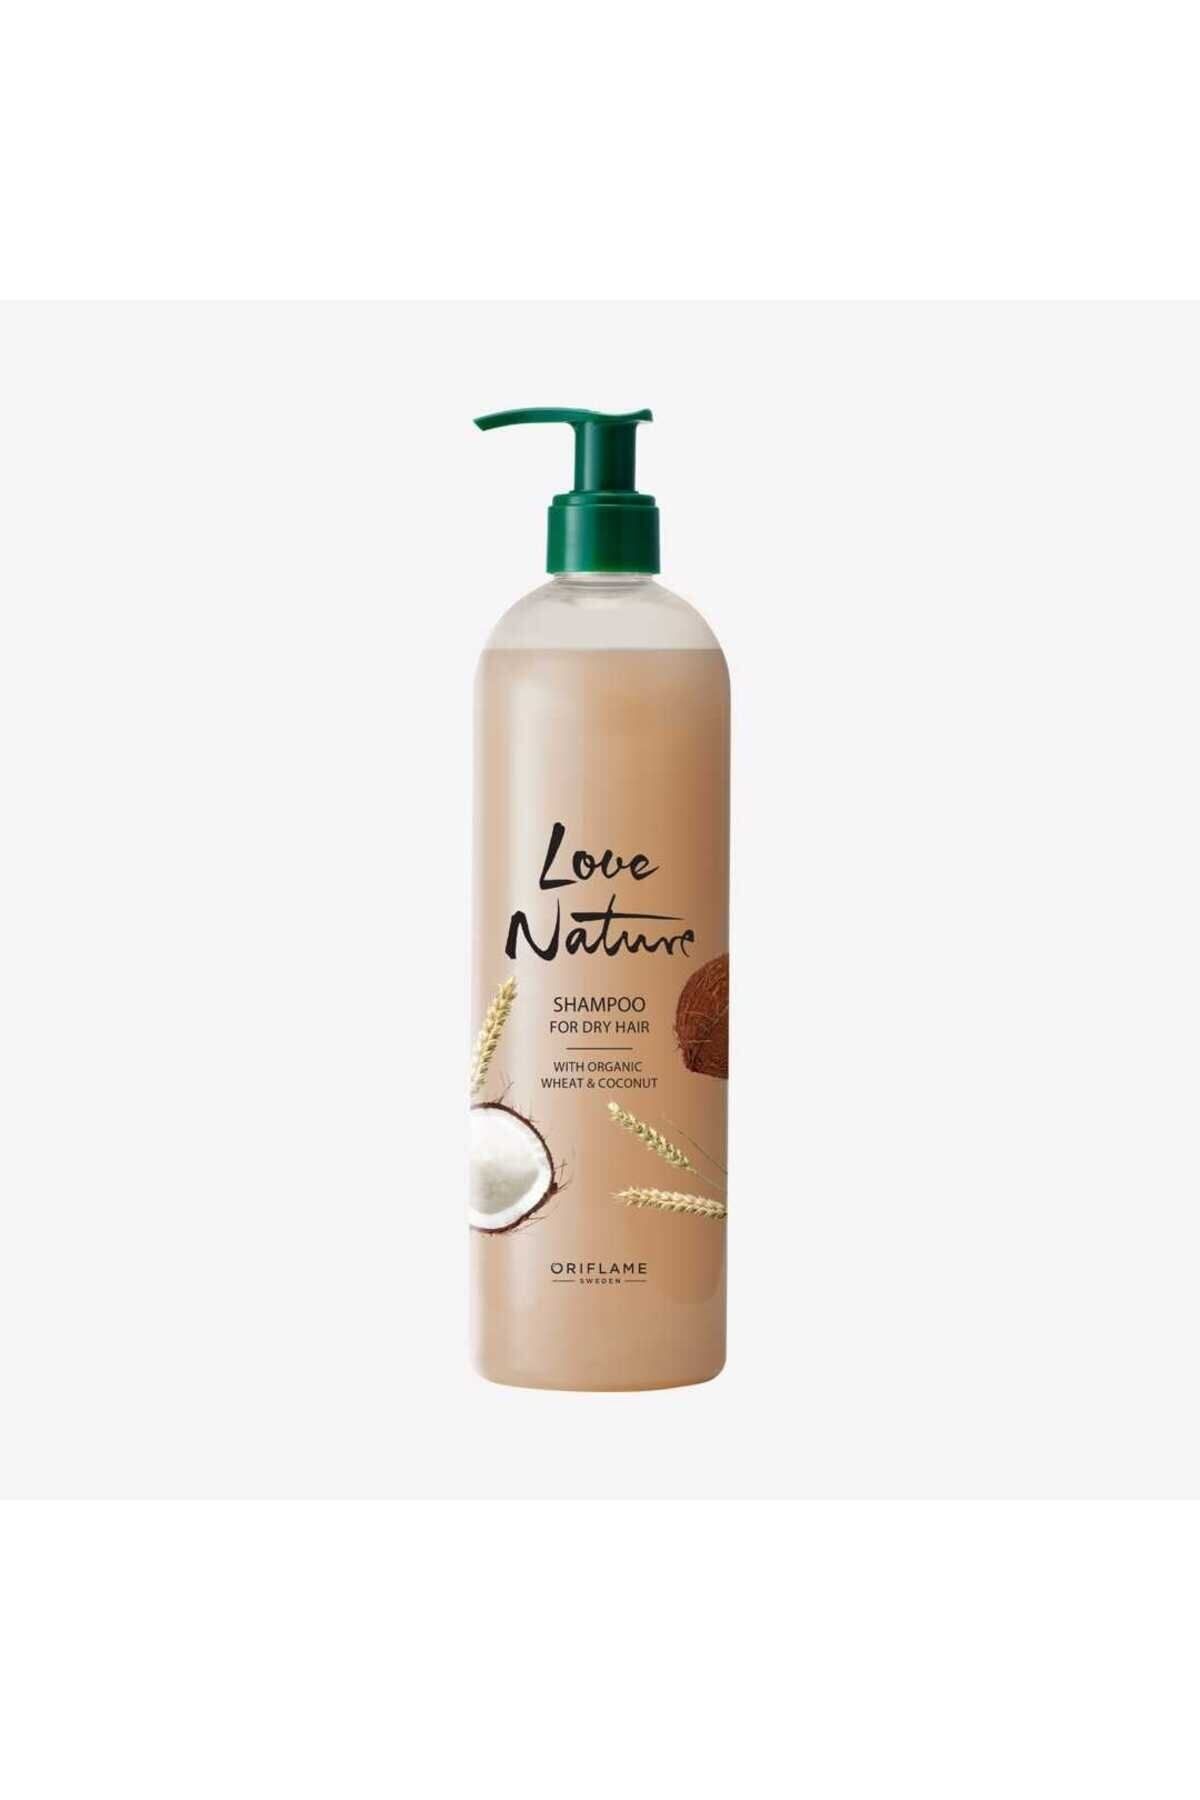 Oriflame Love nature kuru saçlar için organik buğday ve hindistan cevizi özlü şampuan